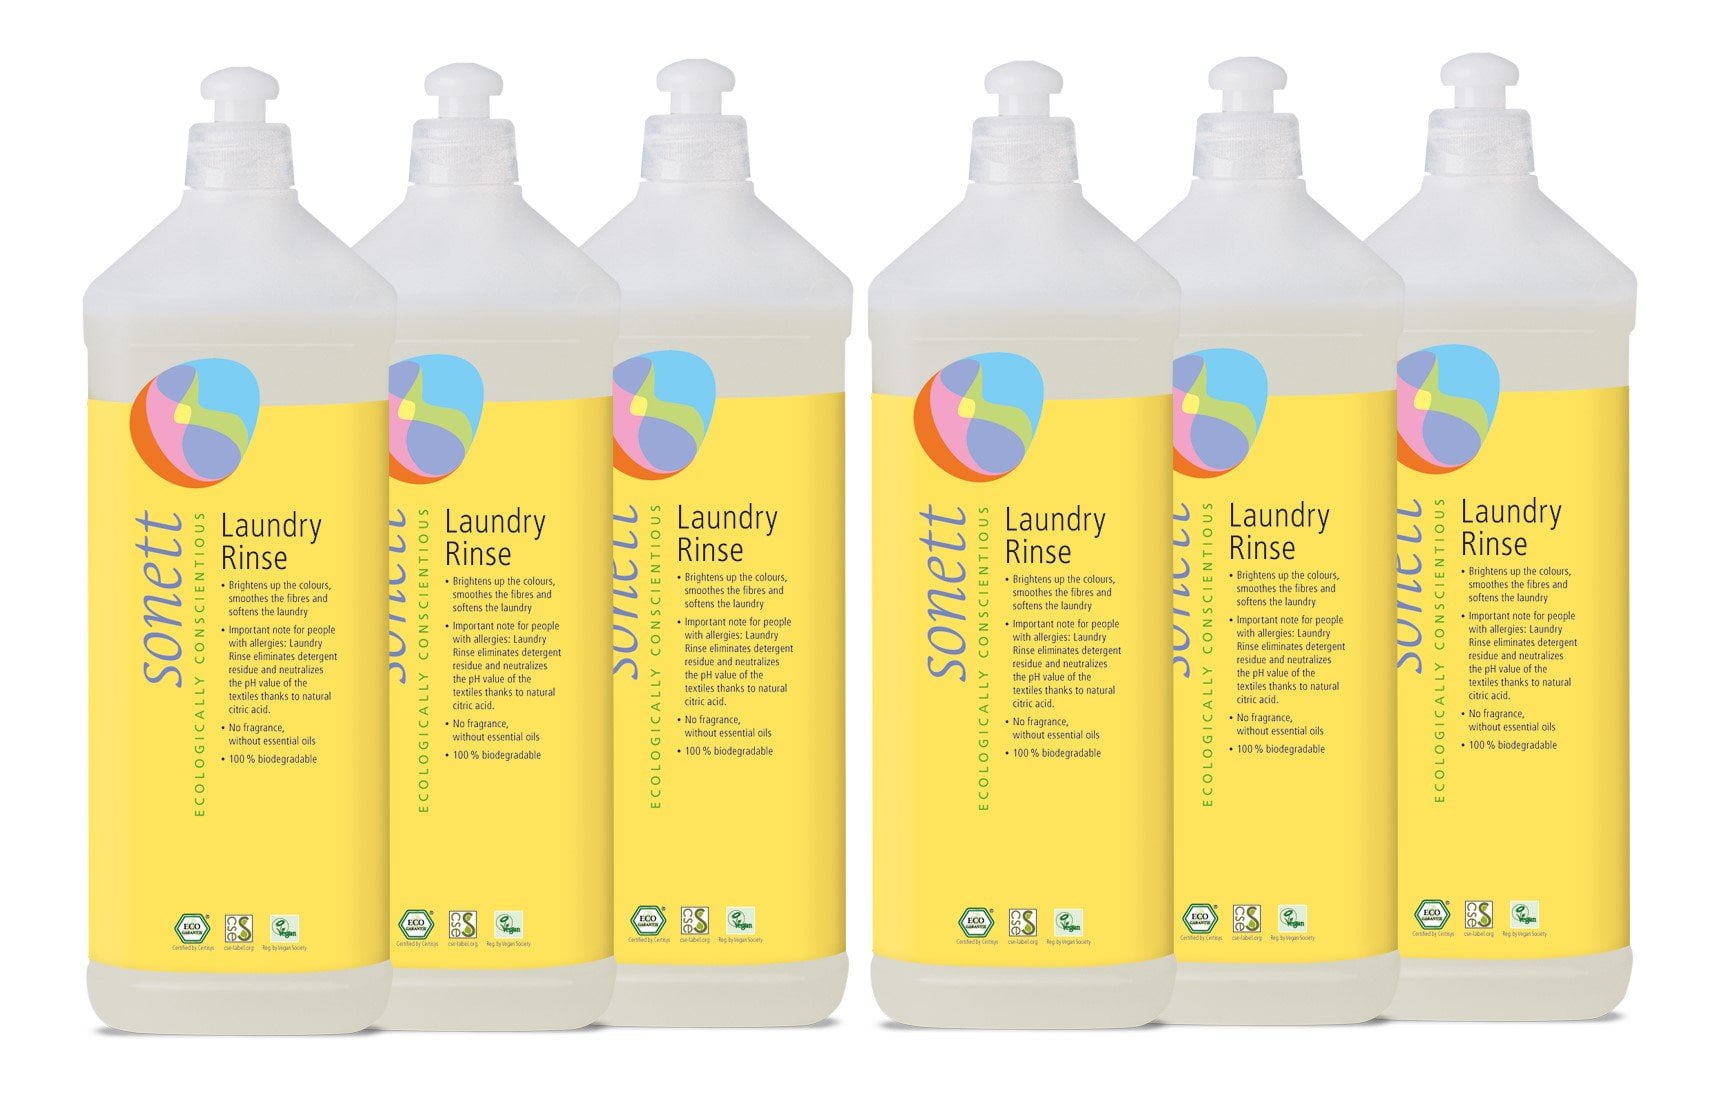 500ml Underwear Laundry Detergent Cleaning Agent Liquid Supplies Household  for Children Adu1t Women Hand Wash Supplies